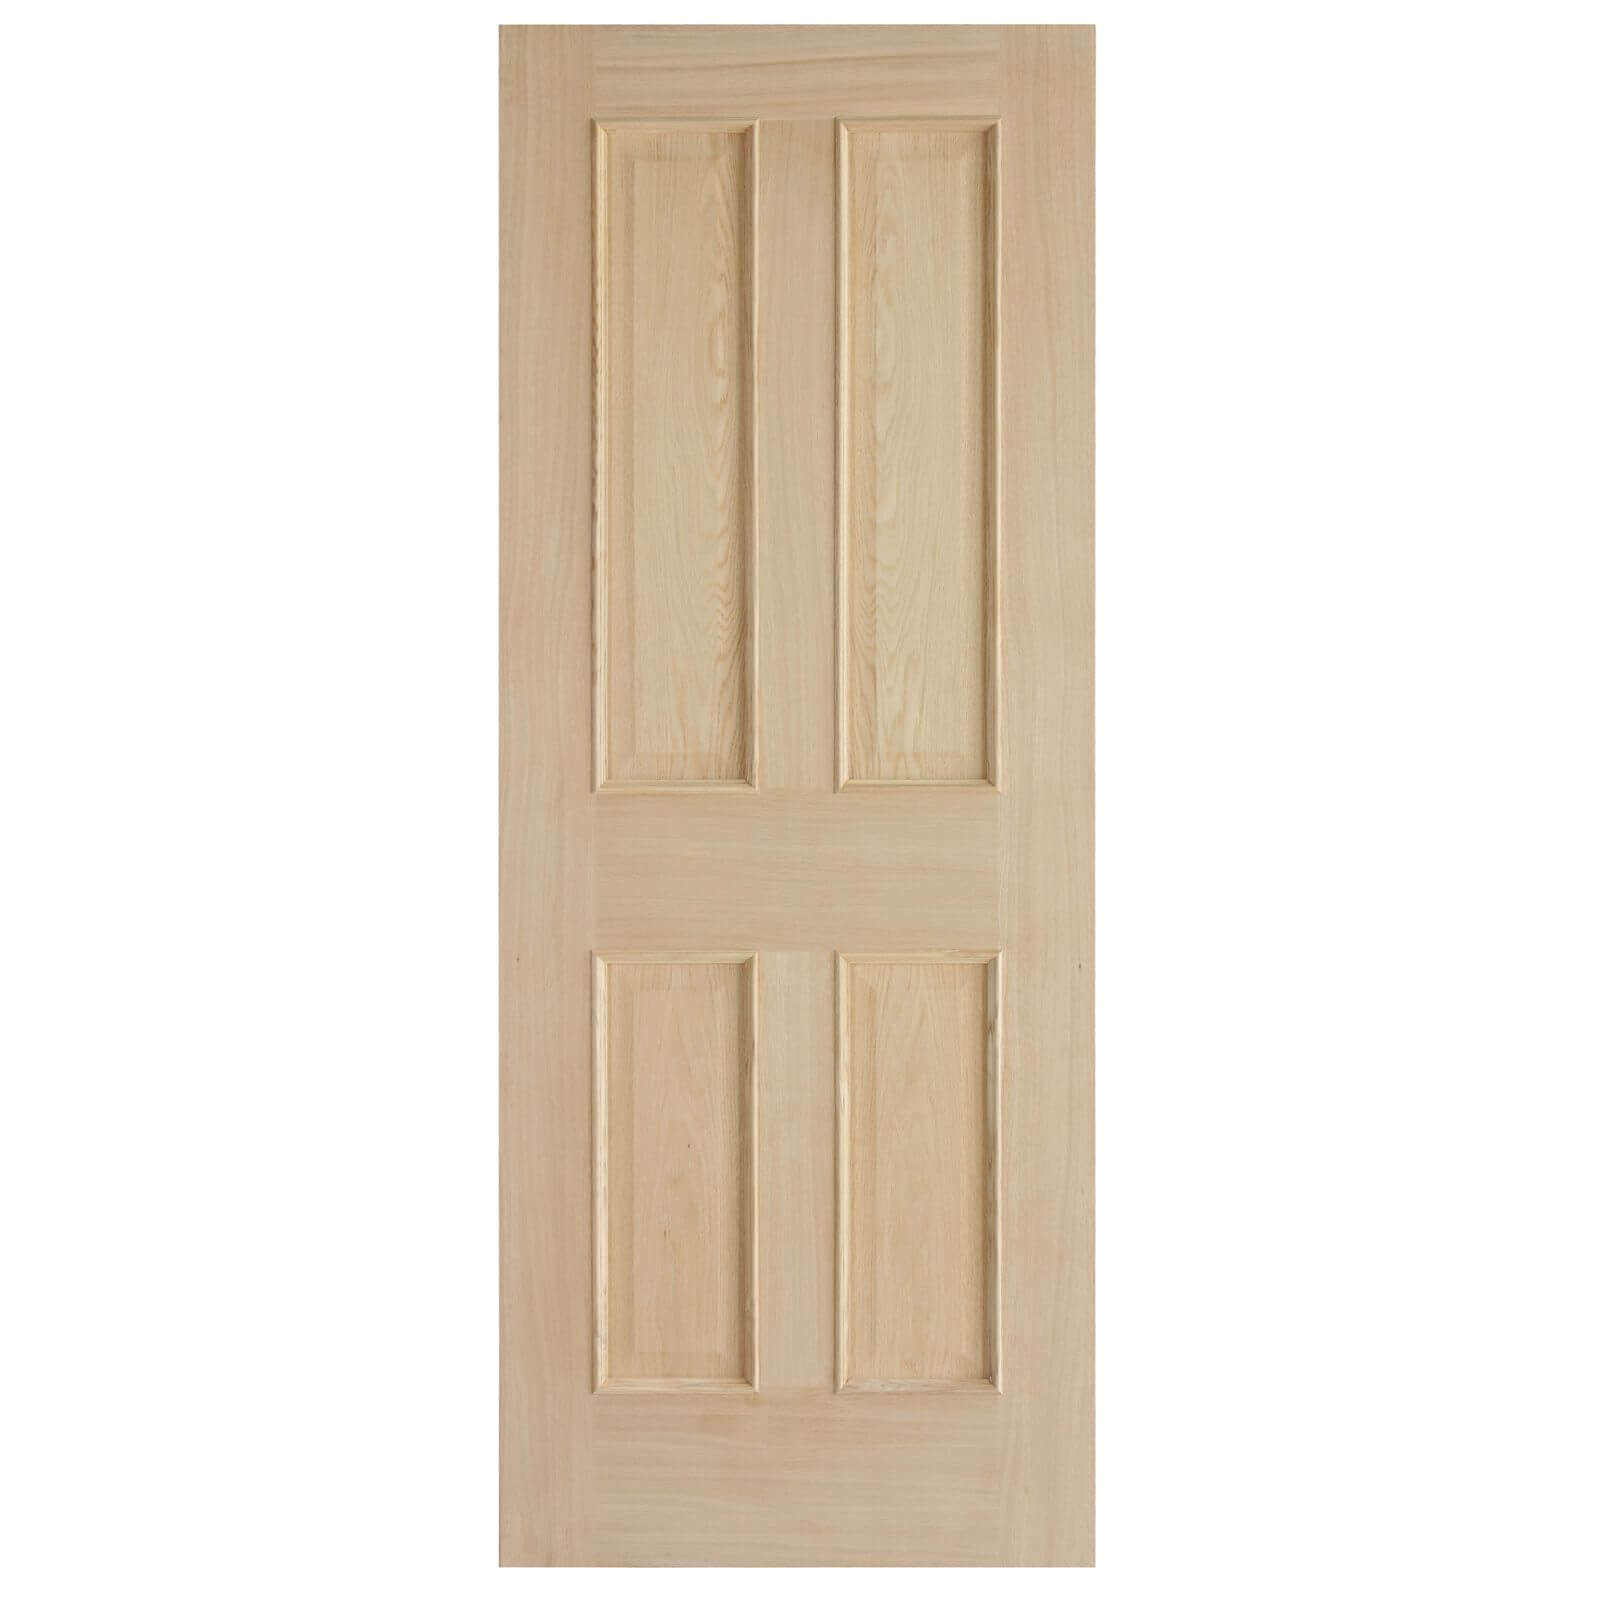 London 4 Panel White Oak Internal Door - 762mm Wide